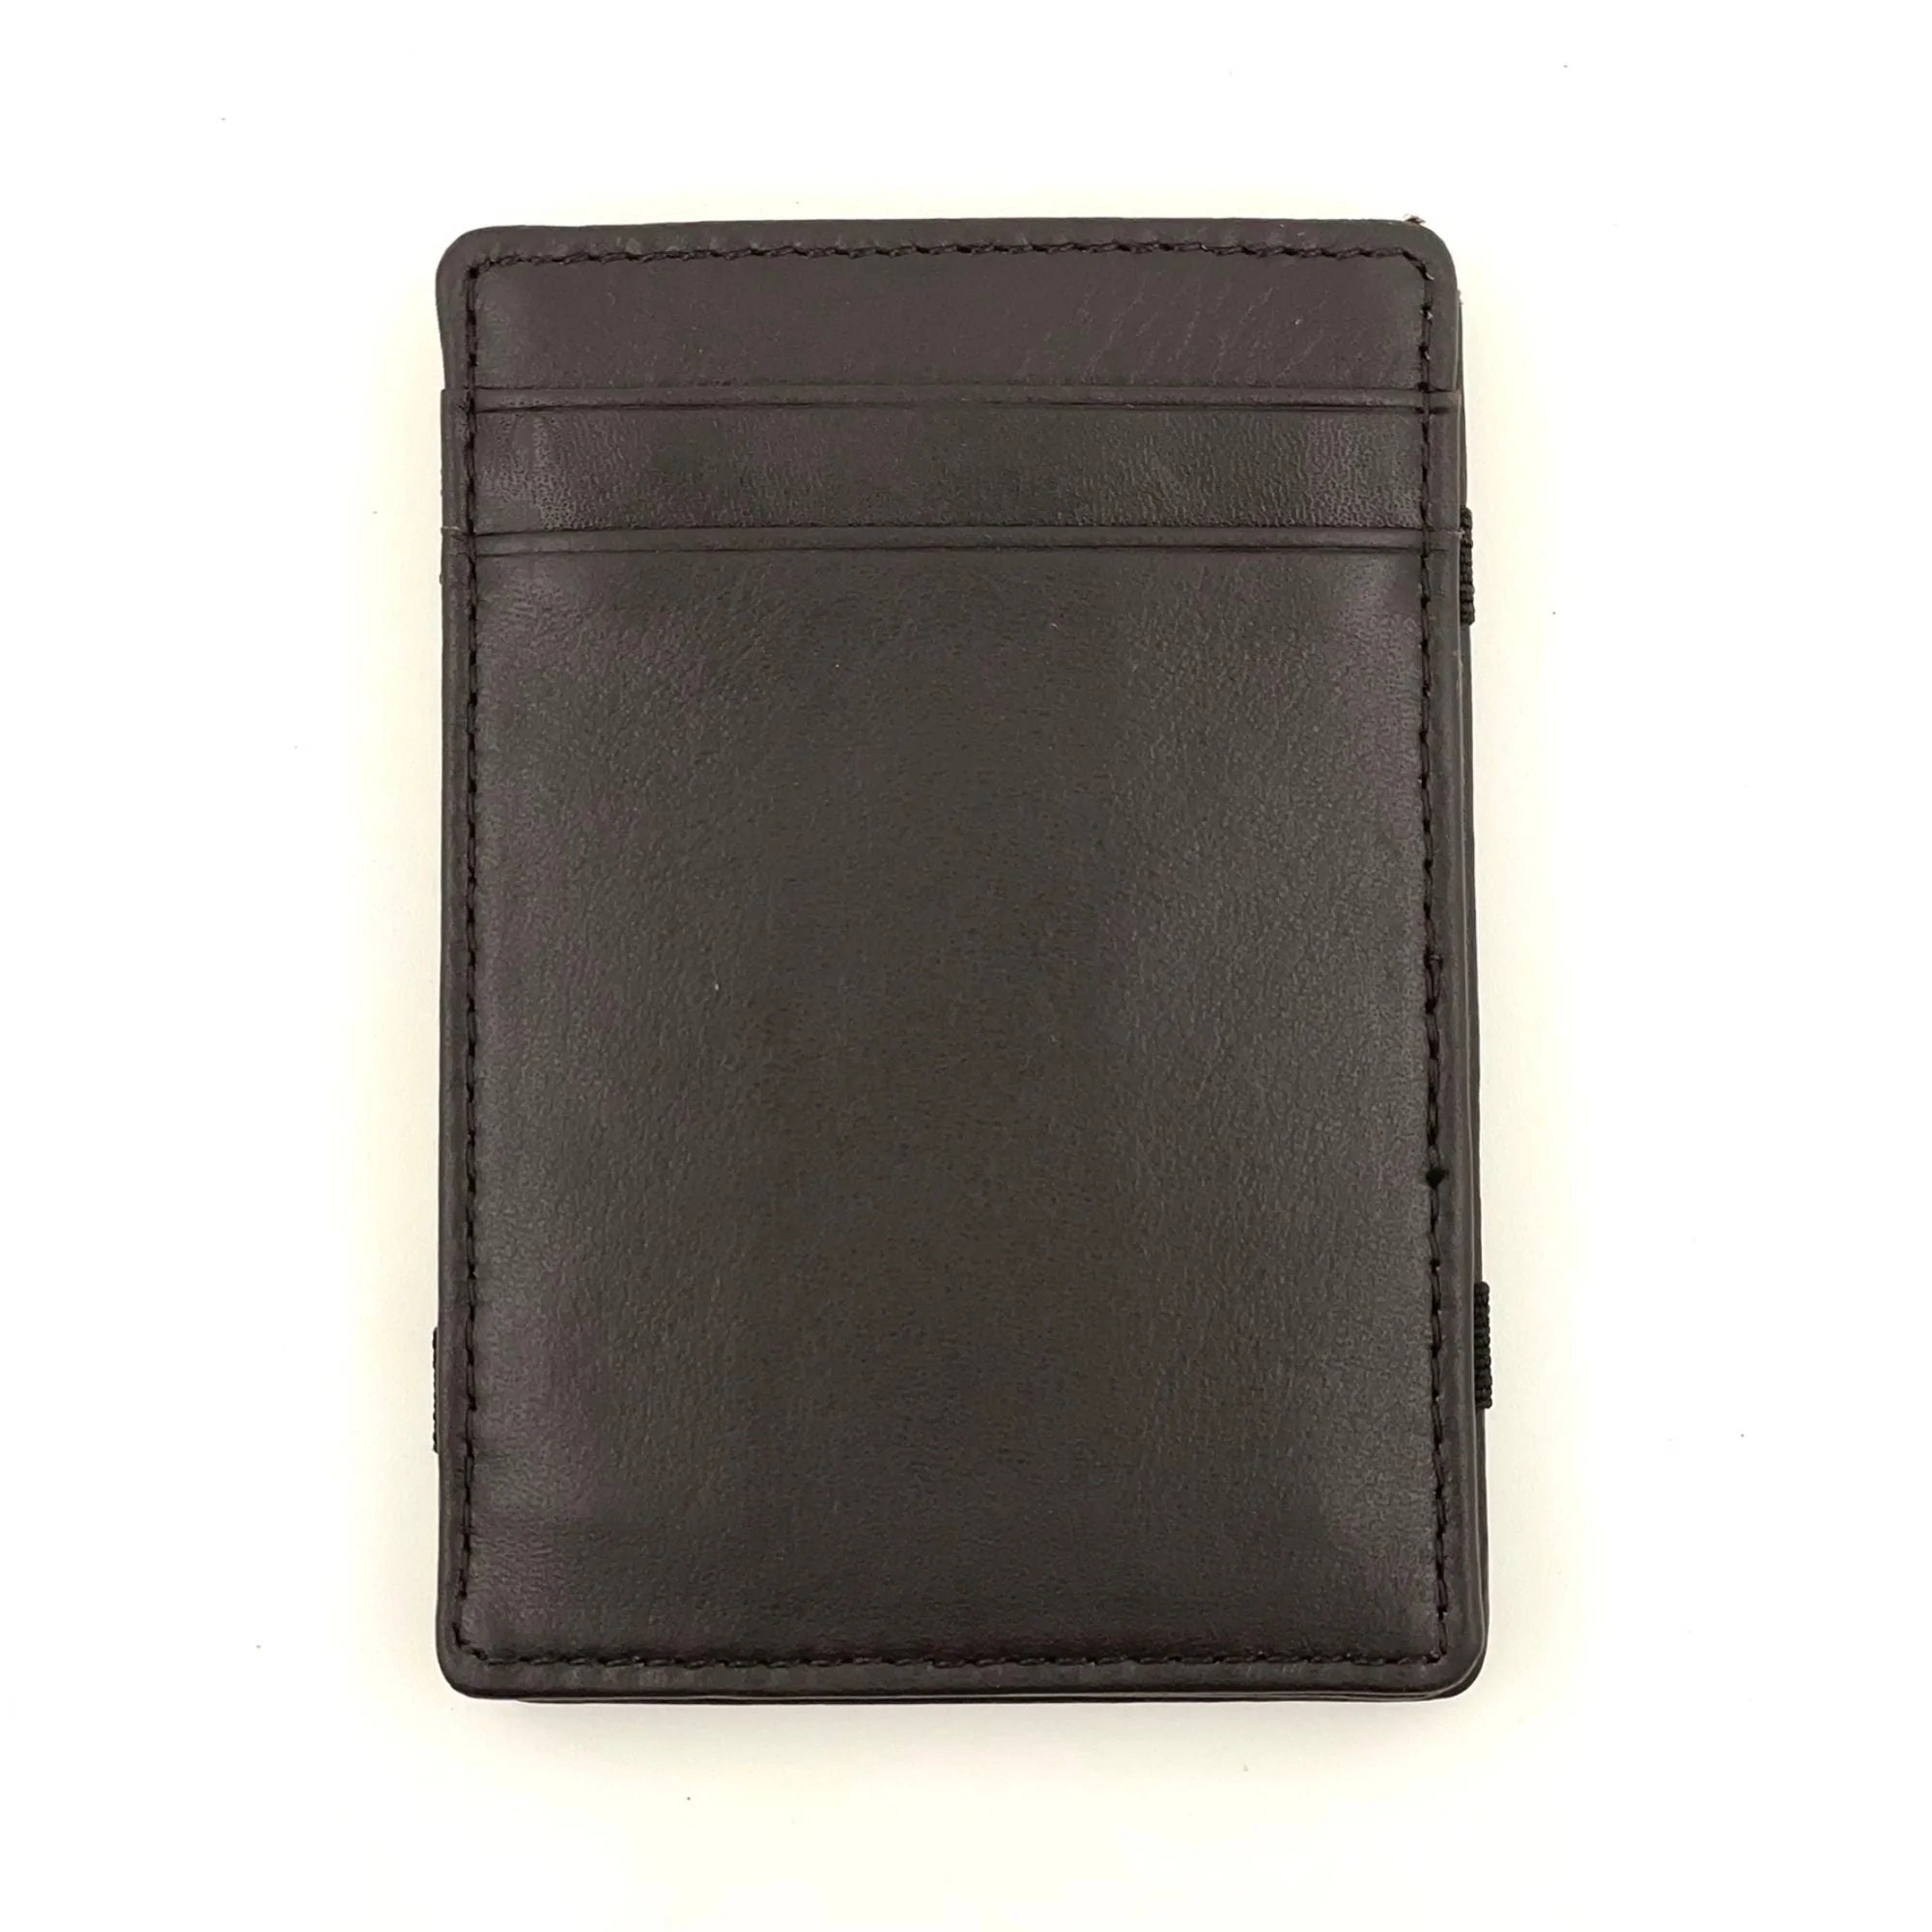 Dark Brown Magic Wallet